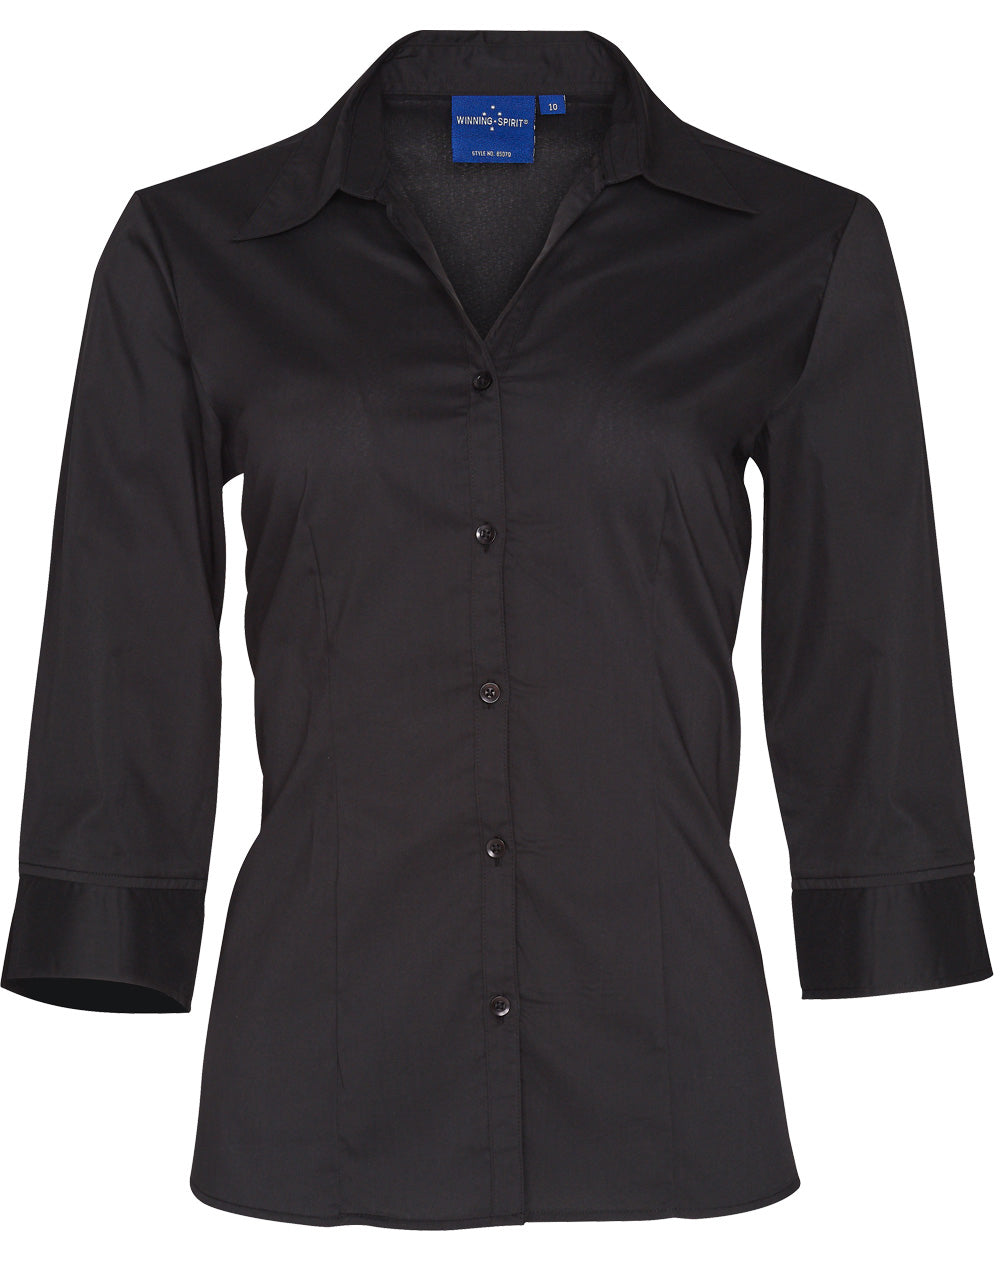 Winning Spirit-Women's Teflon Executive 3/4 Sleeve Shirt-BS07Q